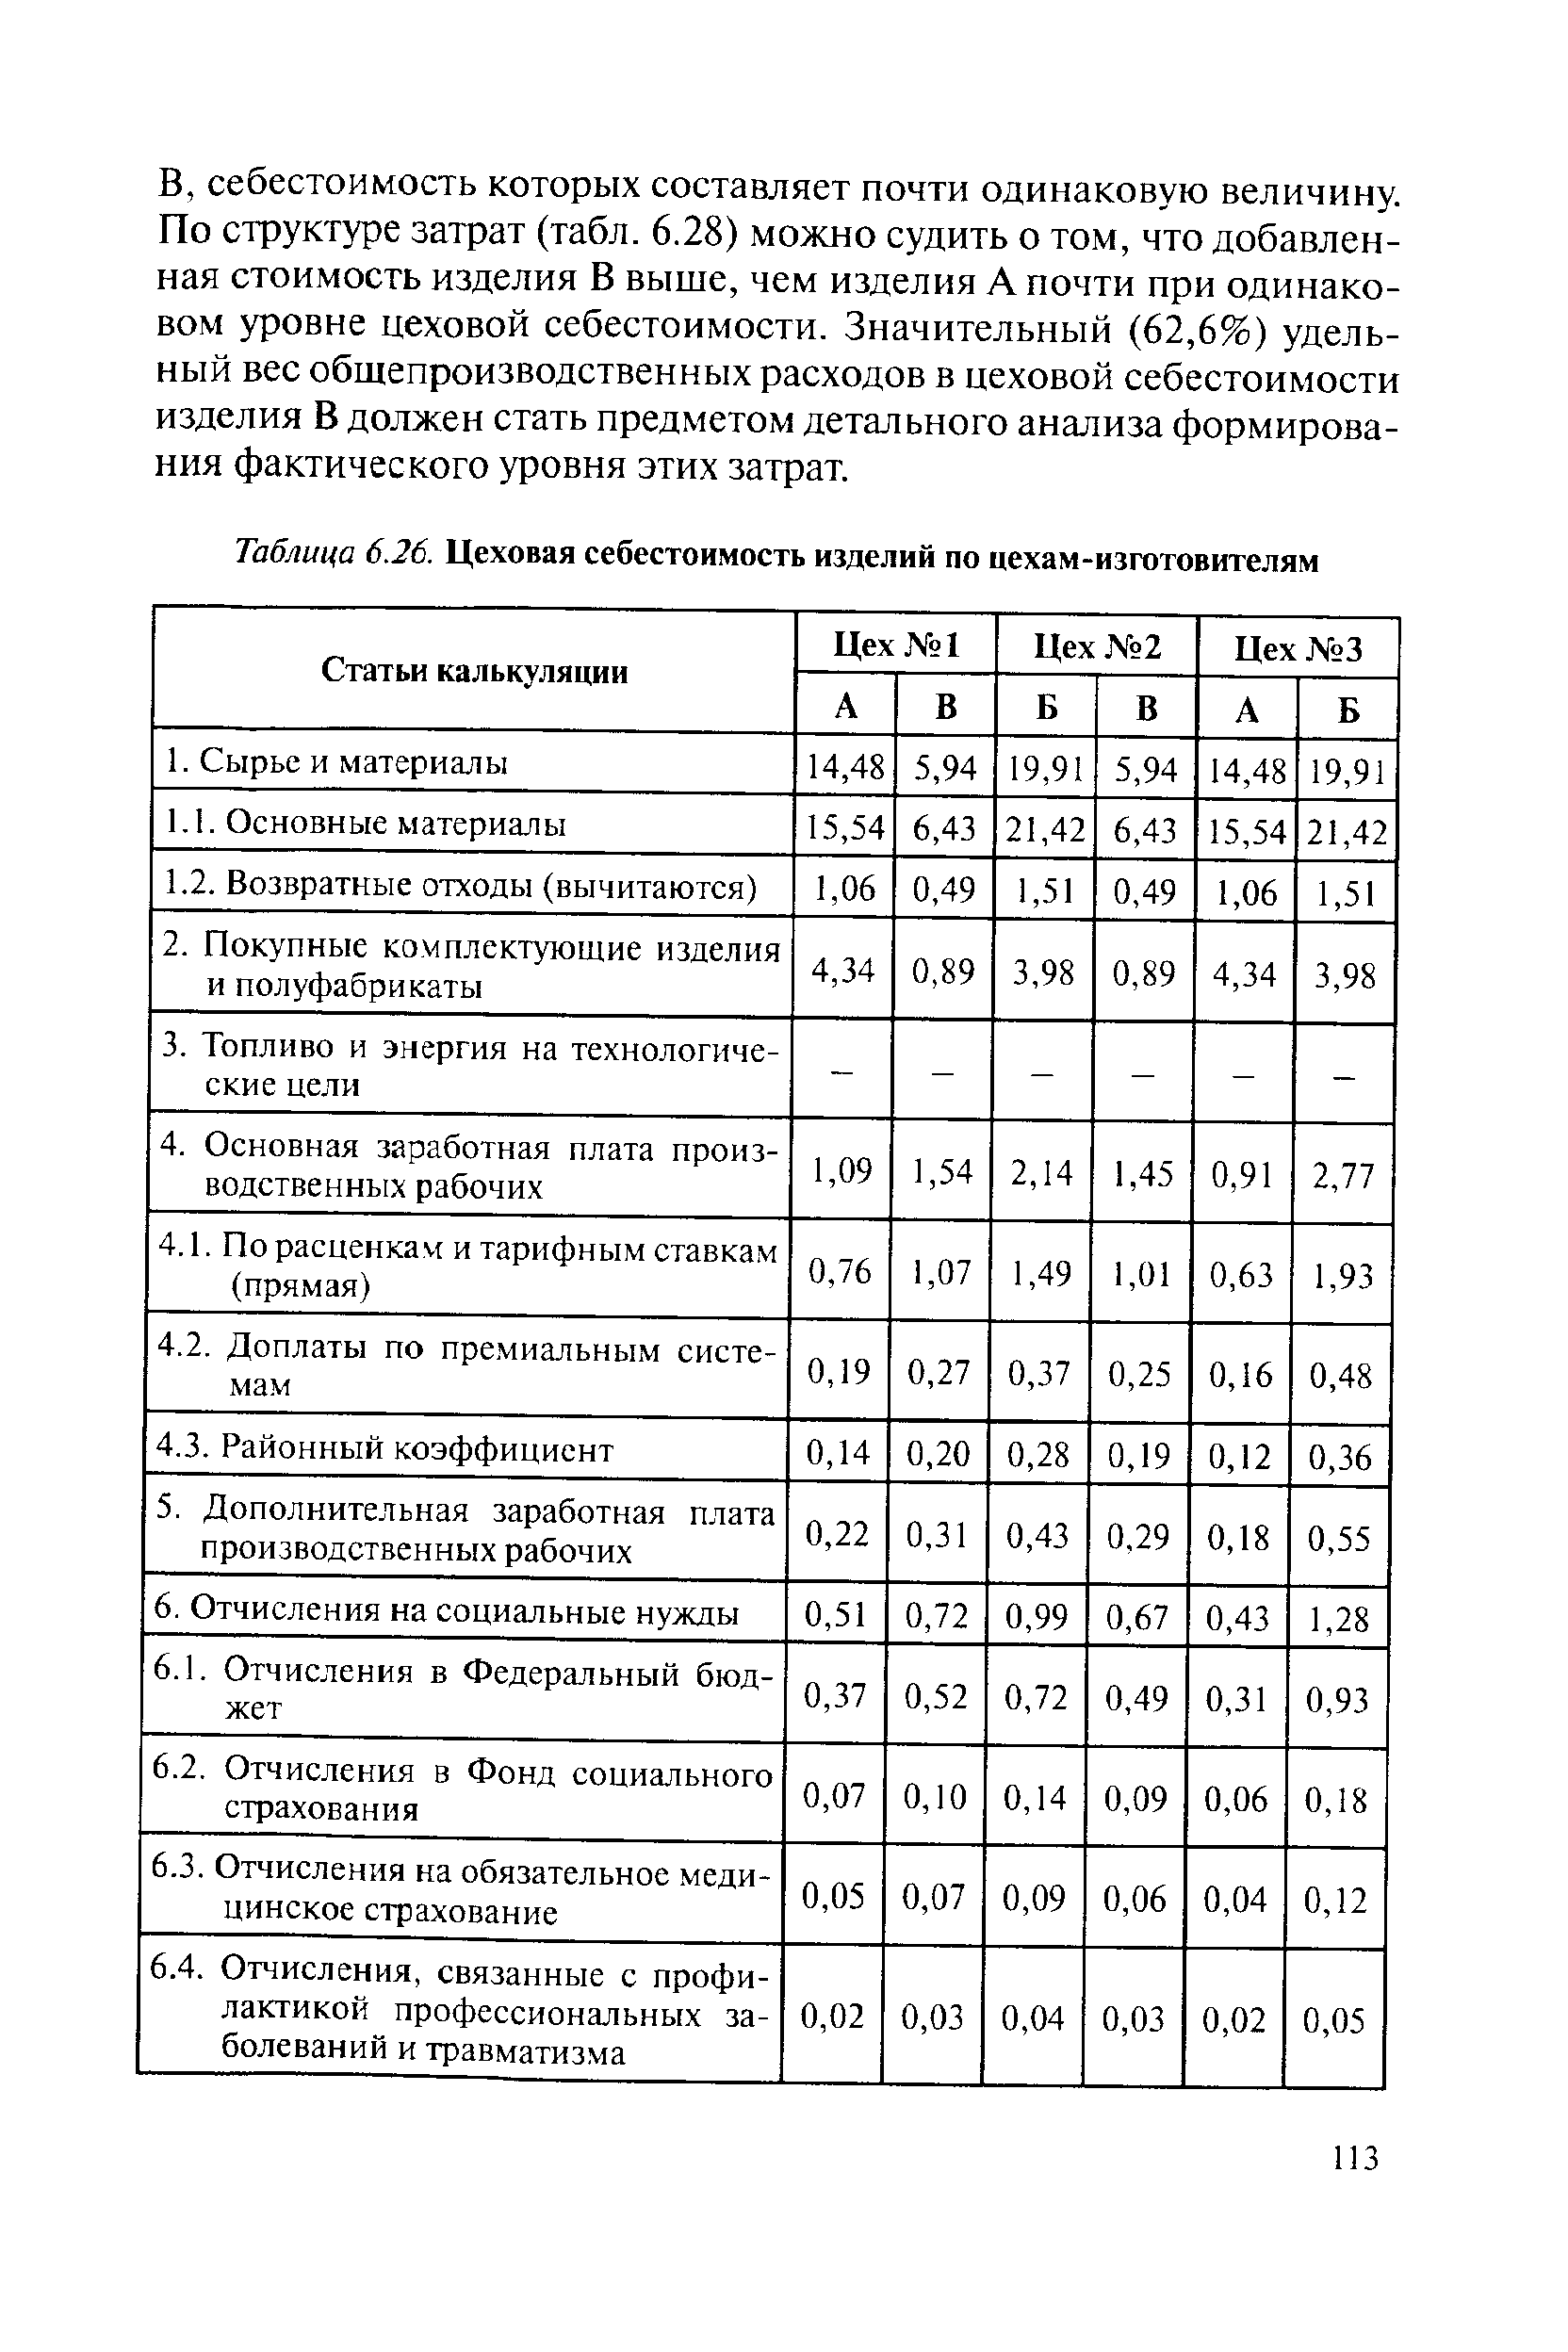 Таблица 6.26. Цеховая себестоимость изделий по цехам-изготовителям
